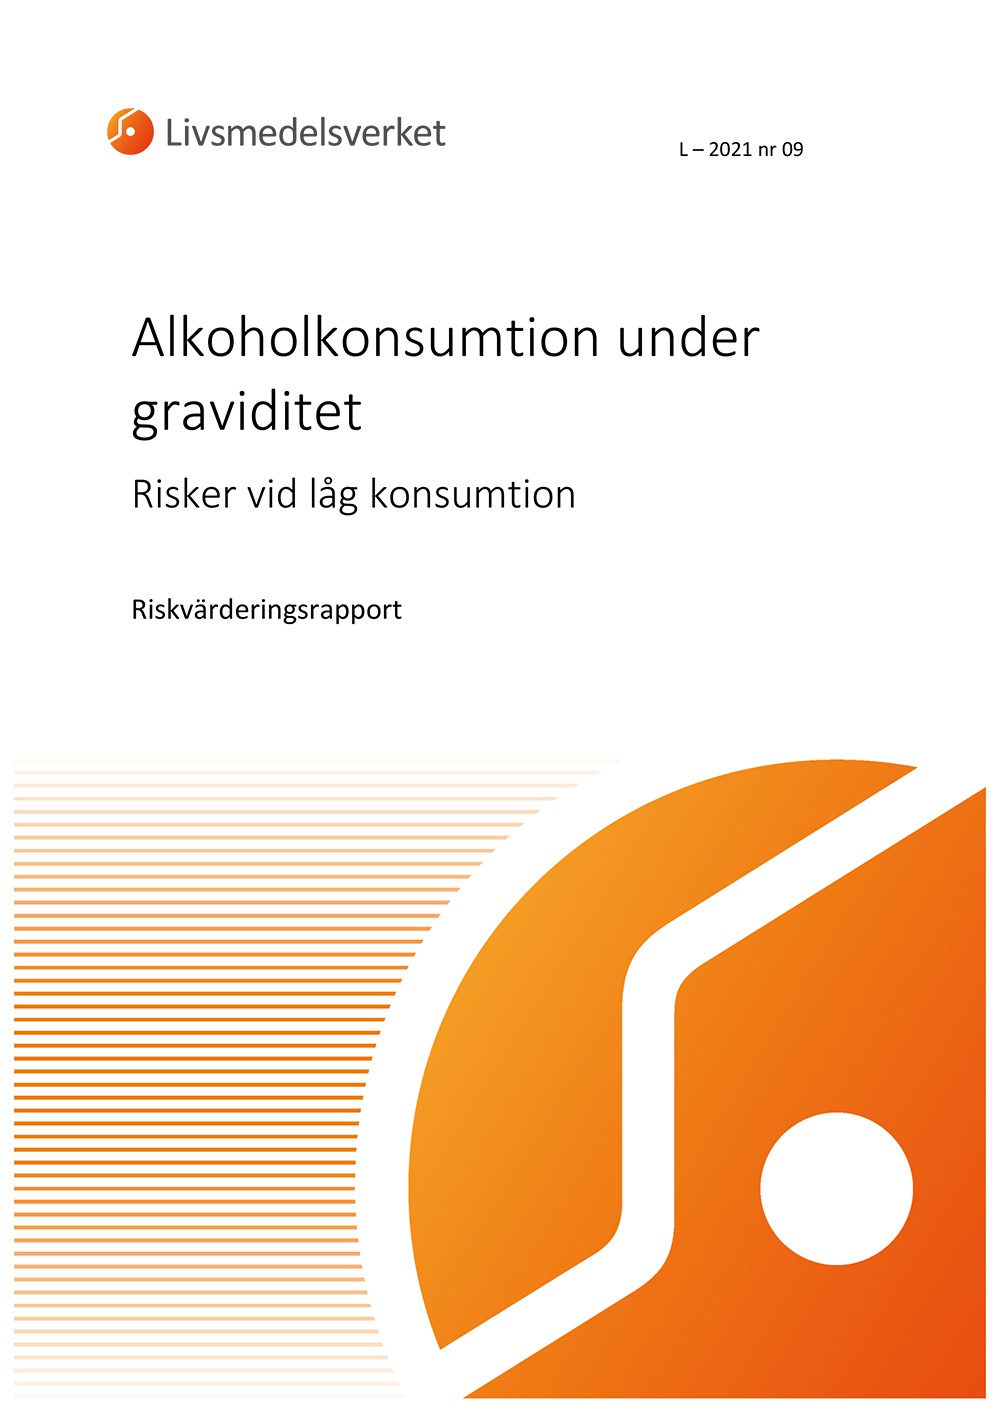 Framsidan av rapport L 2021 nr 09 - Alkoholkonsumtion under graviditet. Risker vid låg konsumtion.